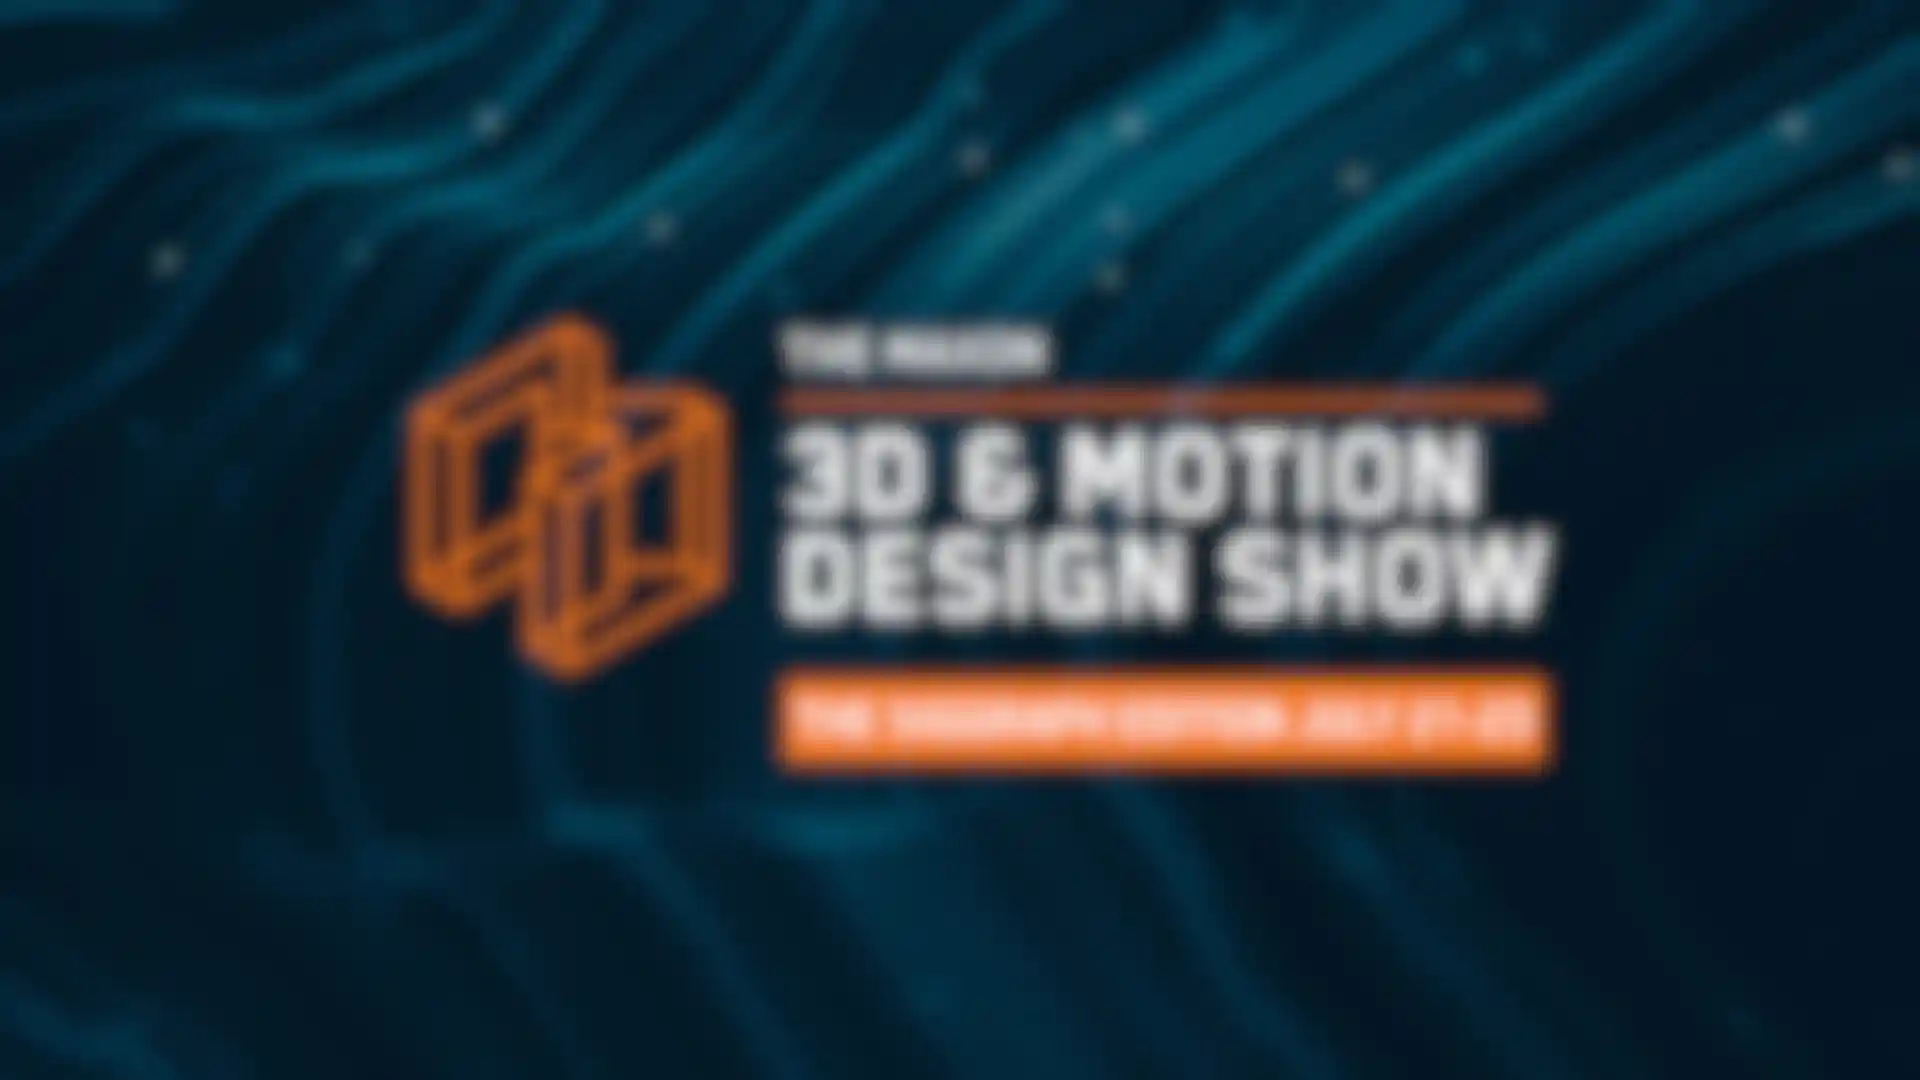 Die 3D and Motion Design Show von Maxon für die Siggraph Präsentiert ein All-Star Lineup image